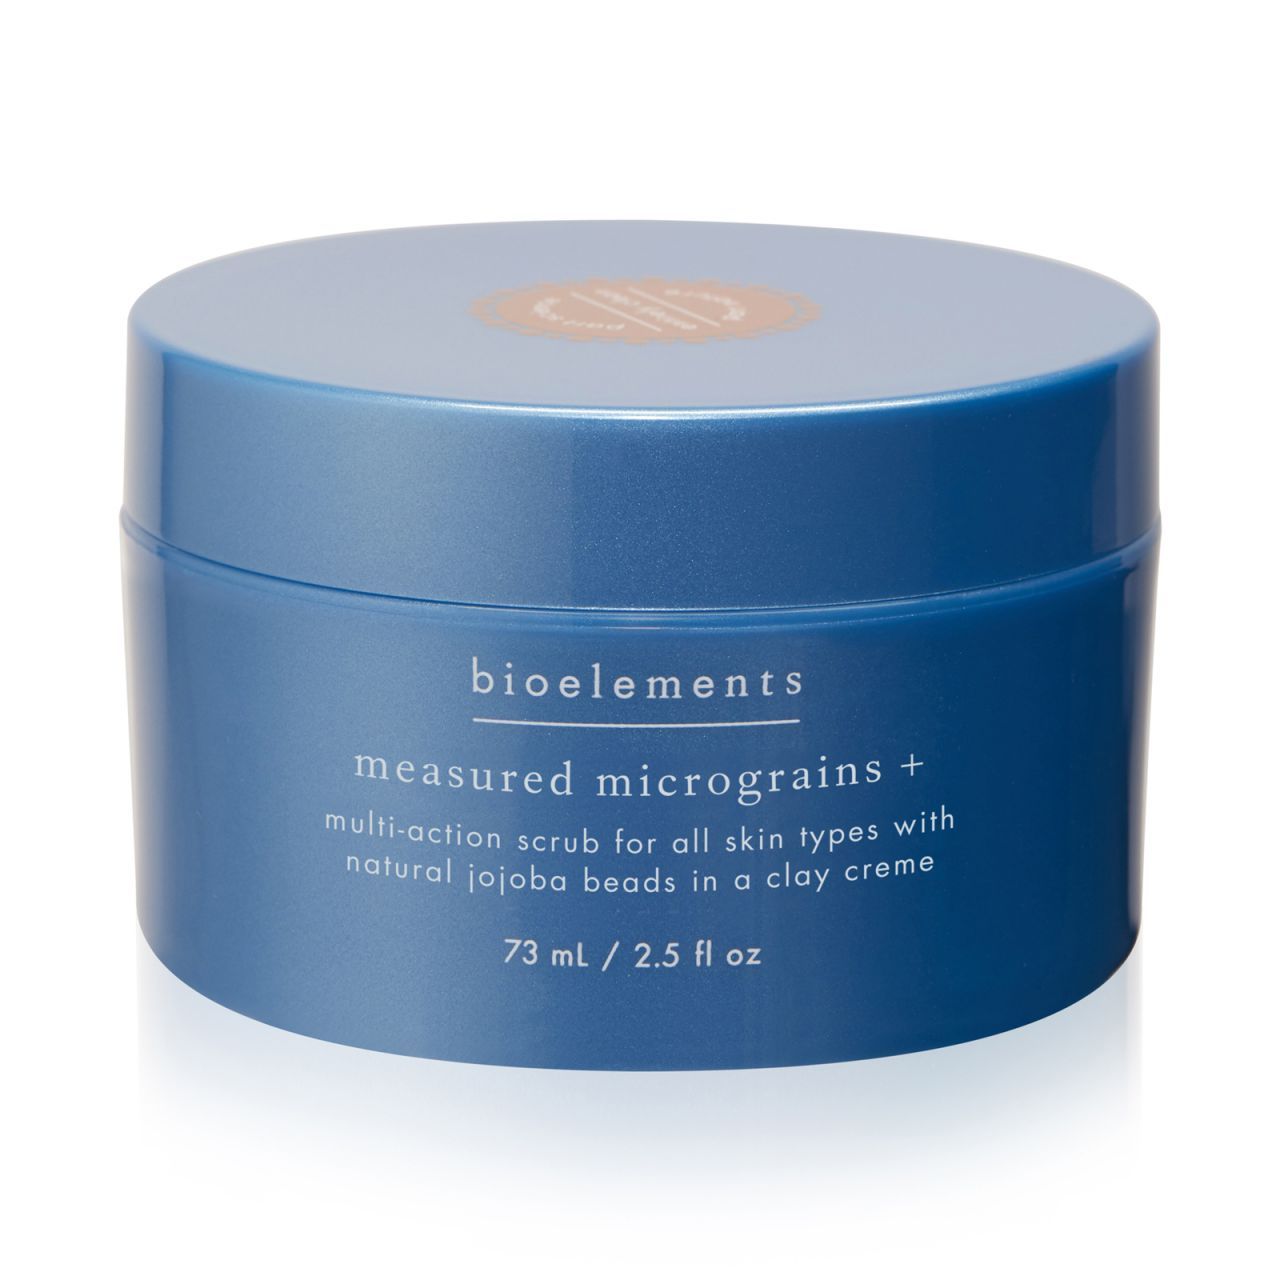 Bioelements - Многофункциональный скраб для всех типов кожи, включая чувствительную Measured Micrograins + - Фото 1